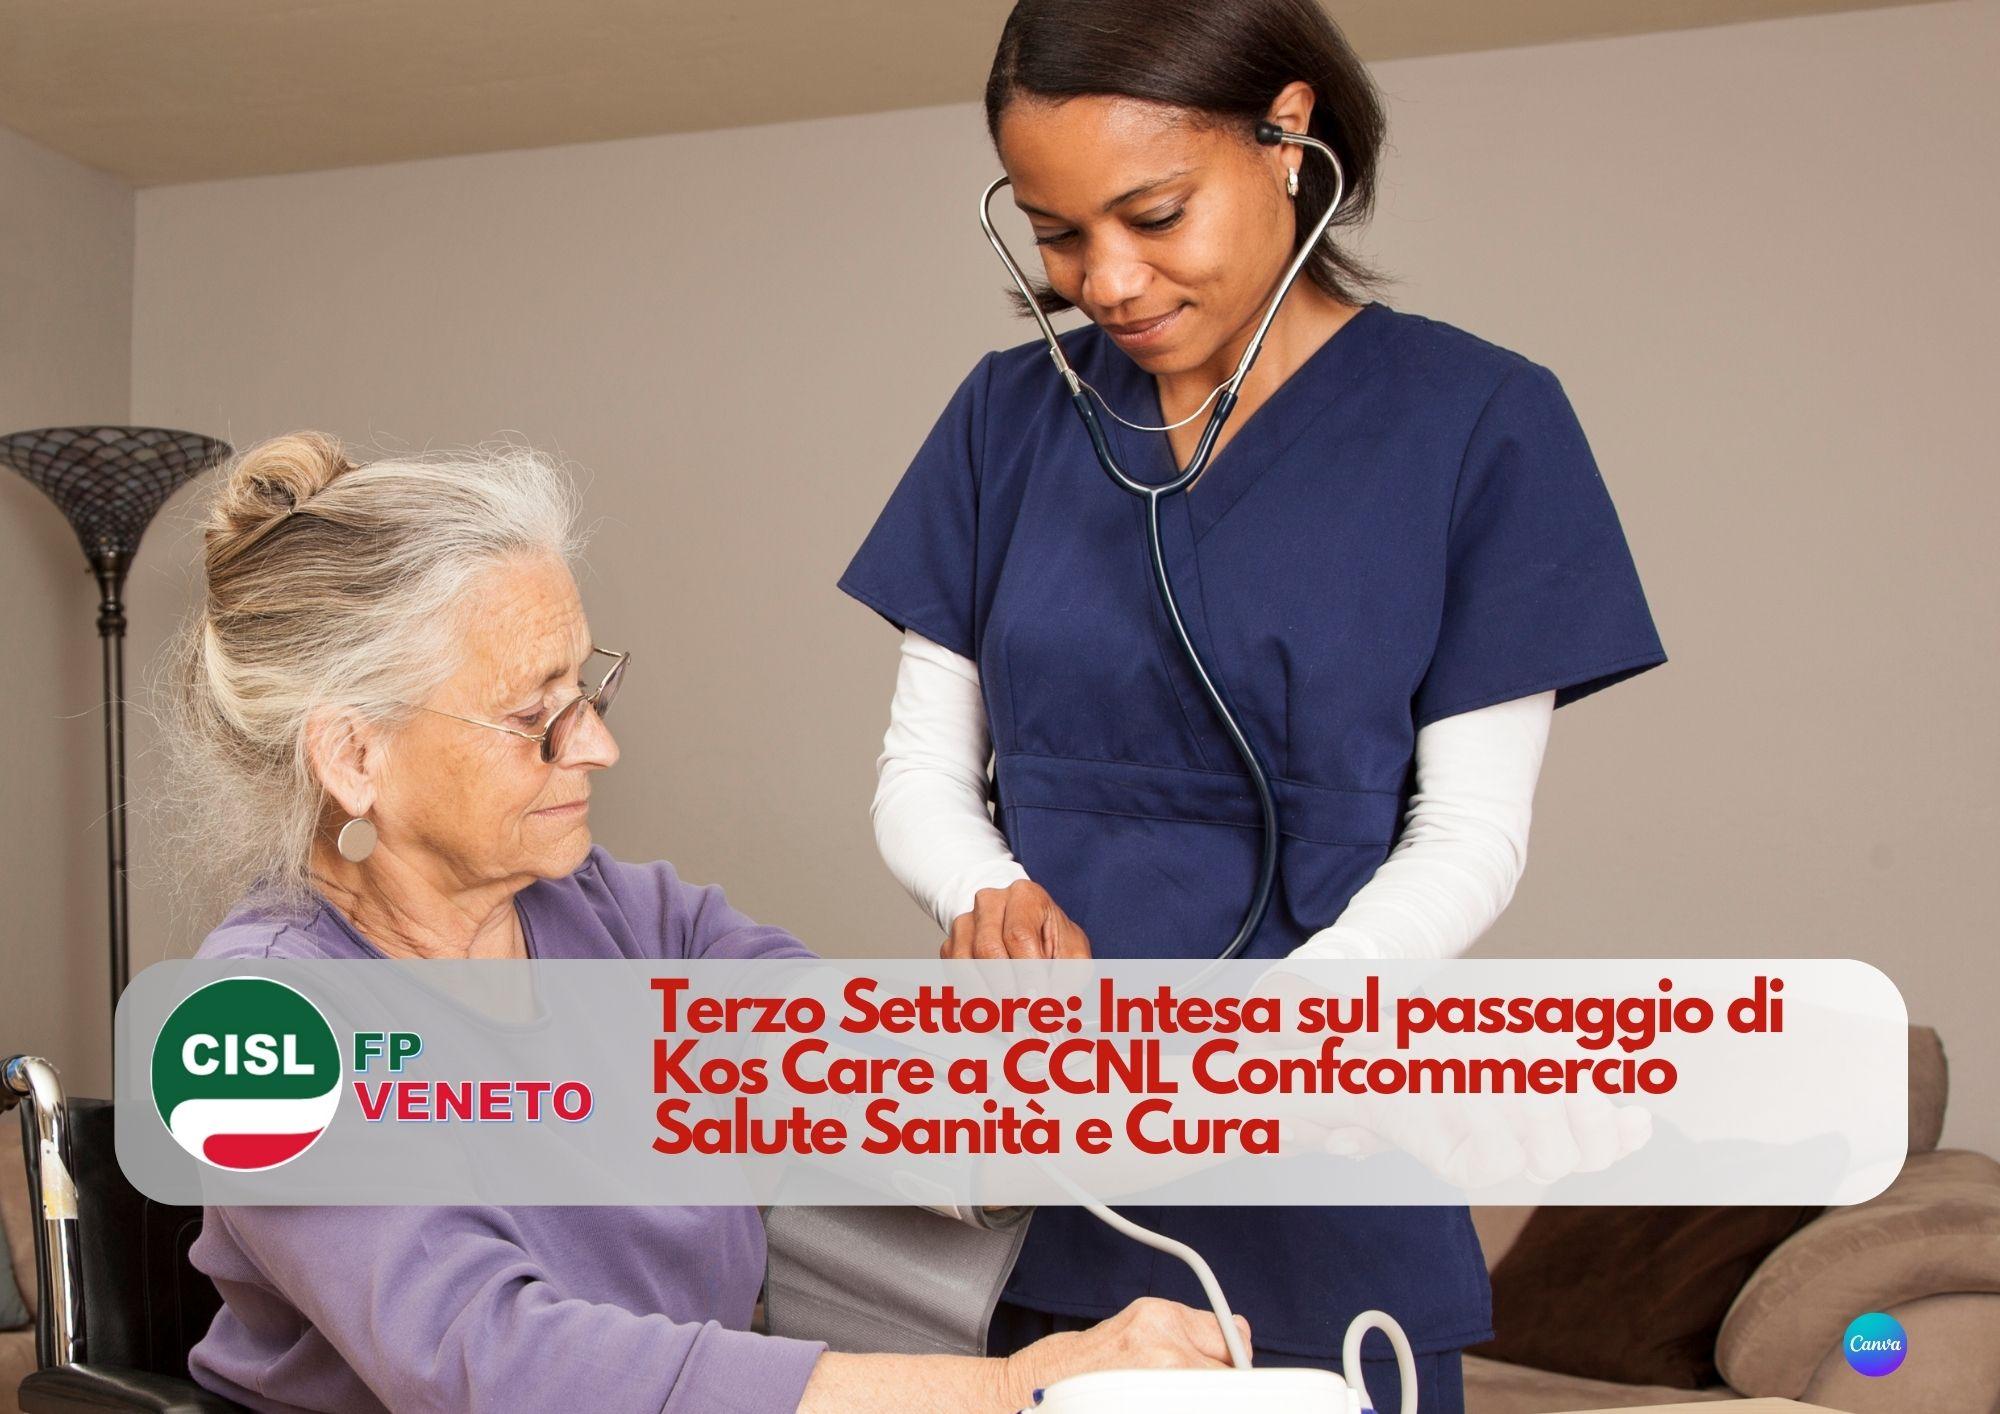 CISL FP Veneto. Terzo Settore: Intesa sul passaggio di Kos Care a CCNL Confcommercio Salute Sanità e Cura